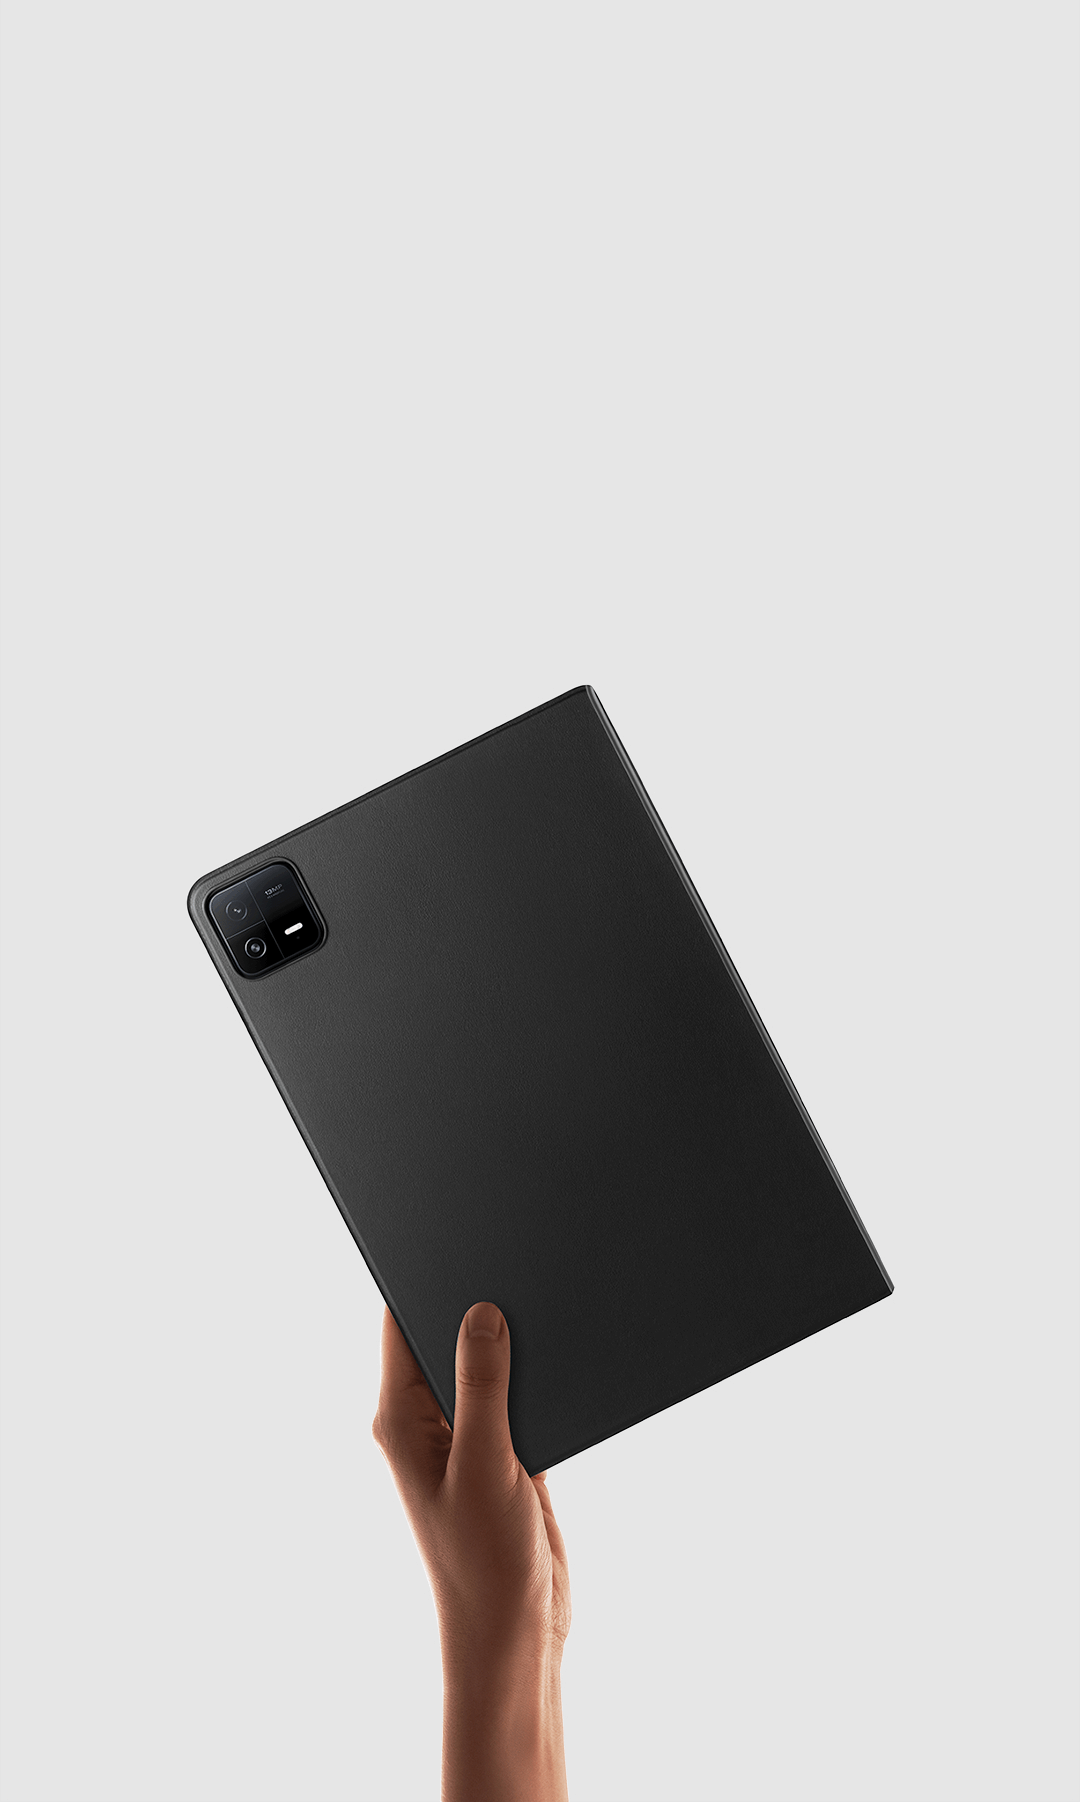 Funda Bookcover para Tablet Xiaomi Pad 6 - Rosa GENERICO